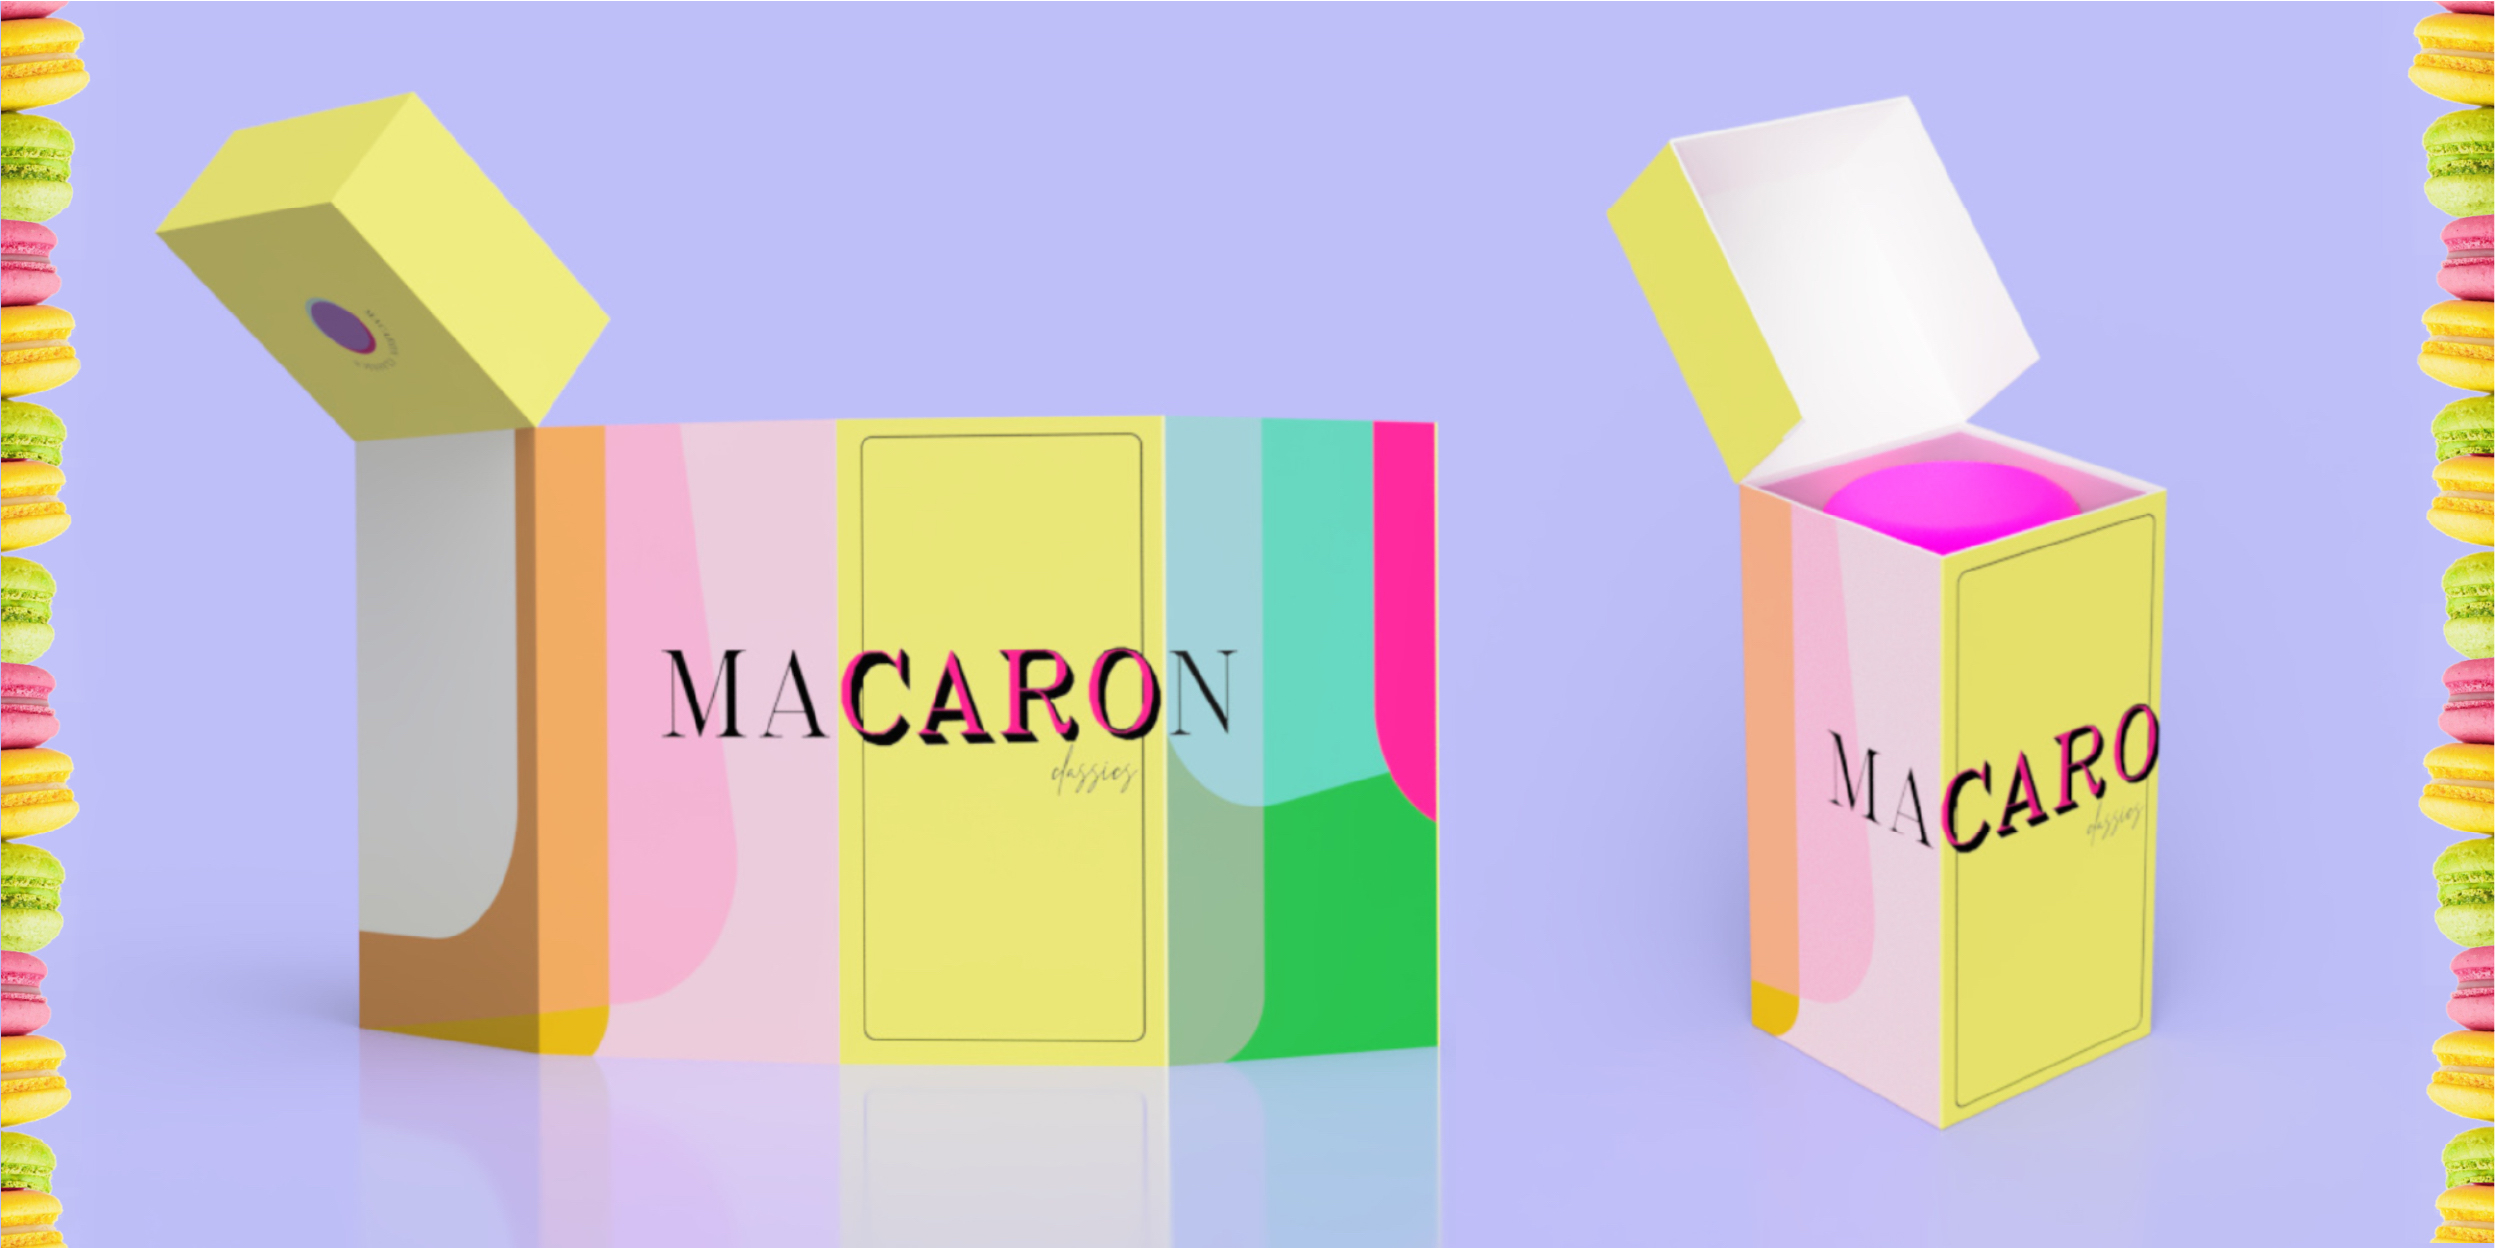 Macaron packaging